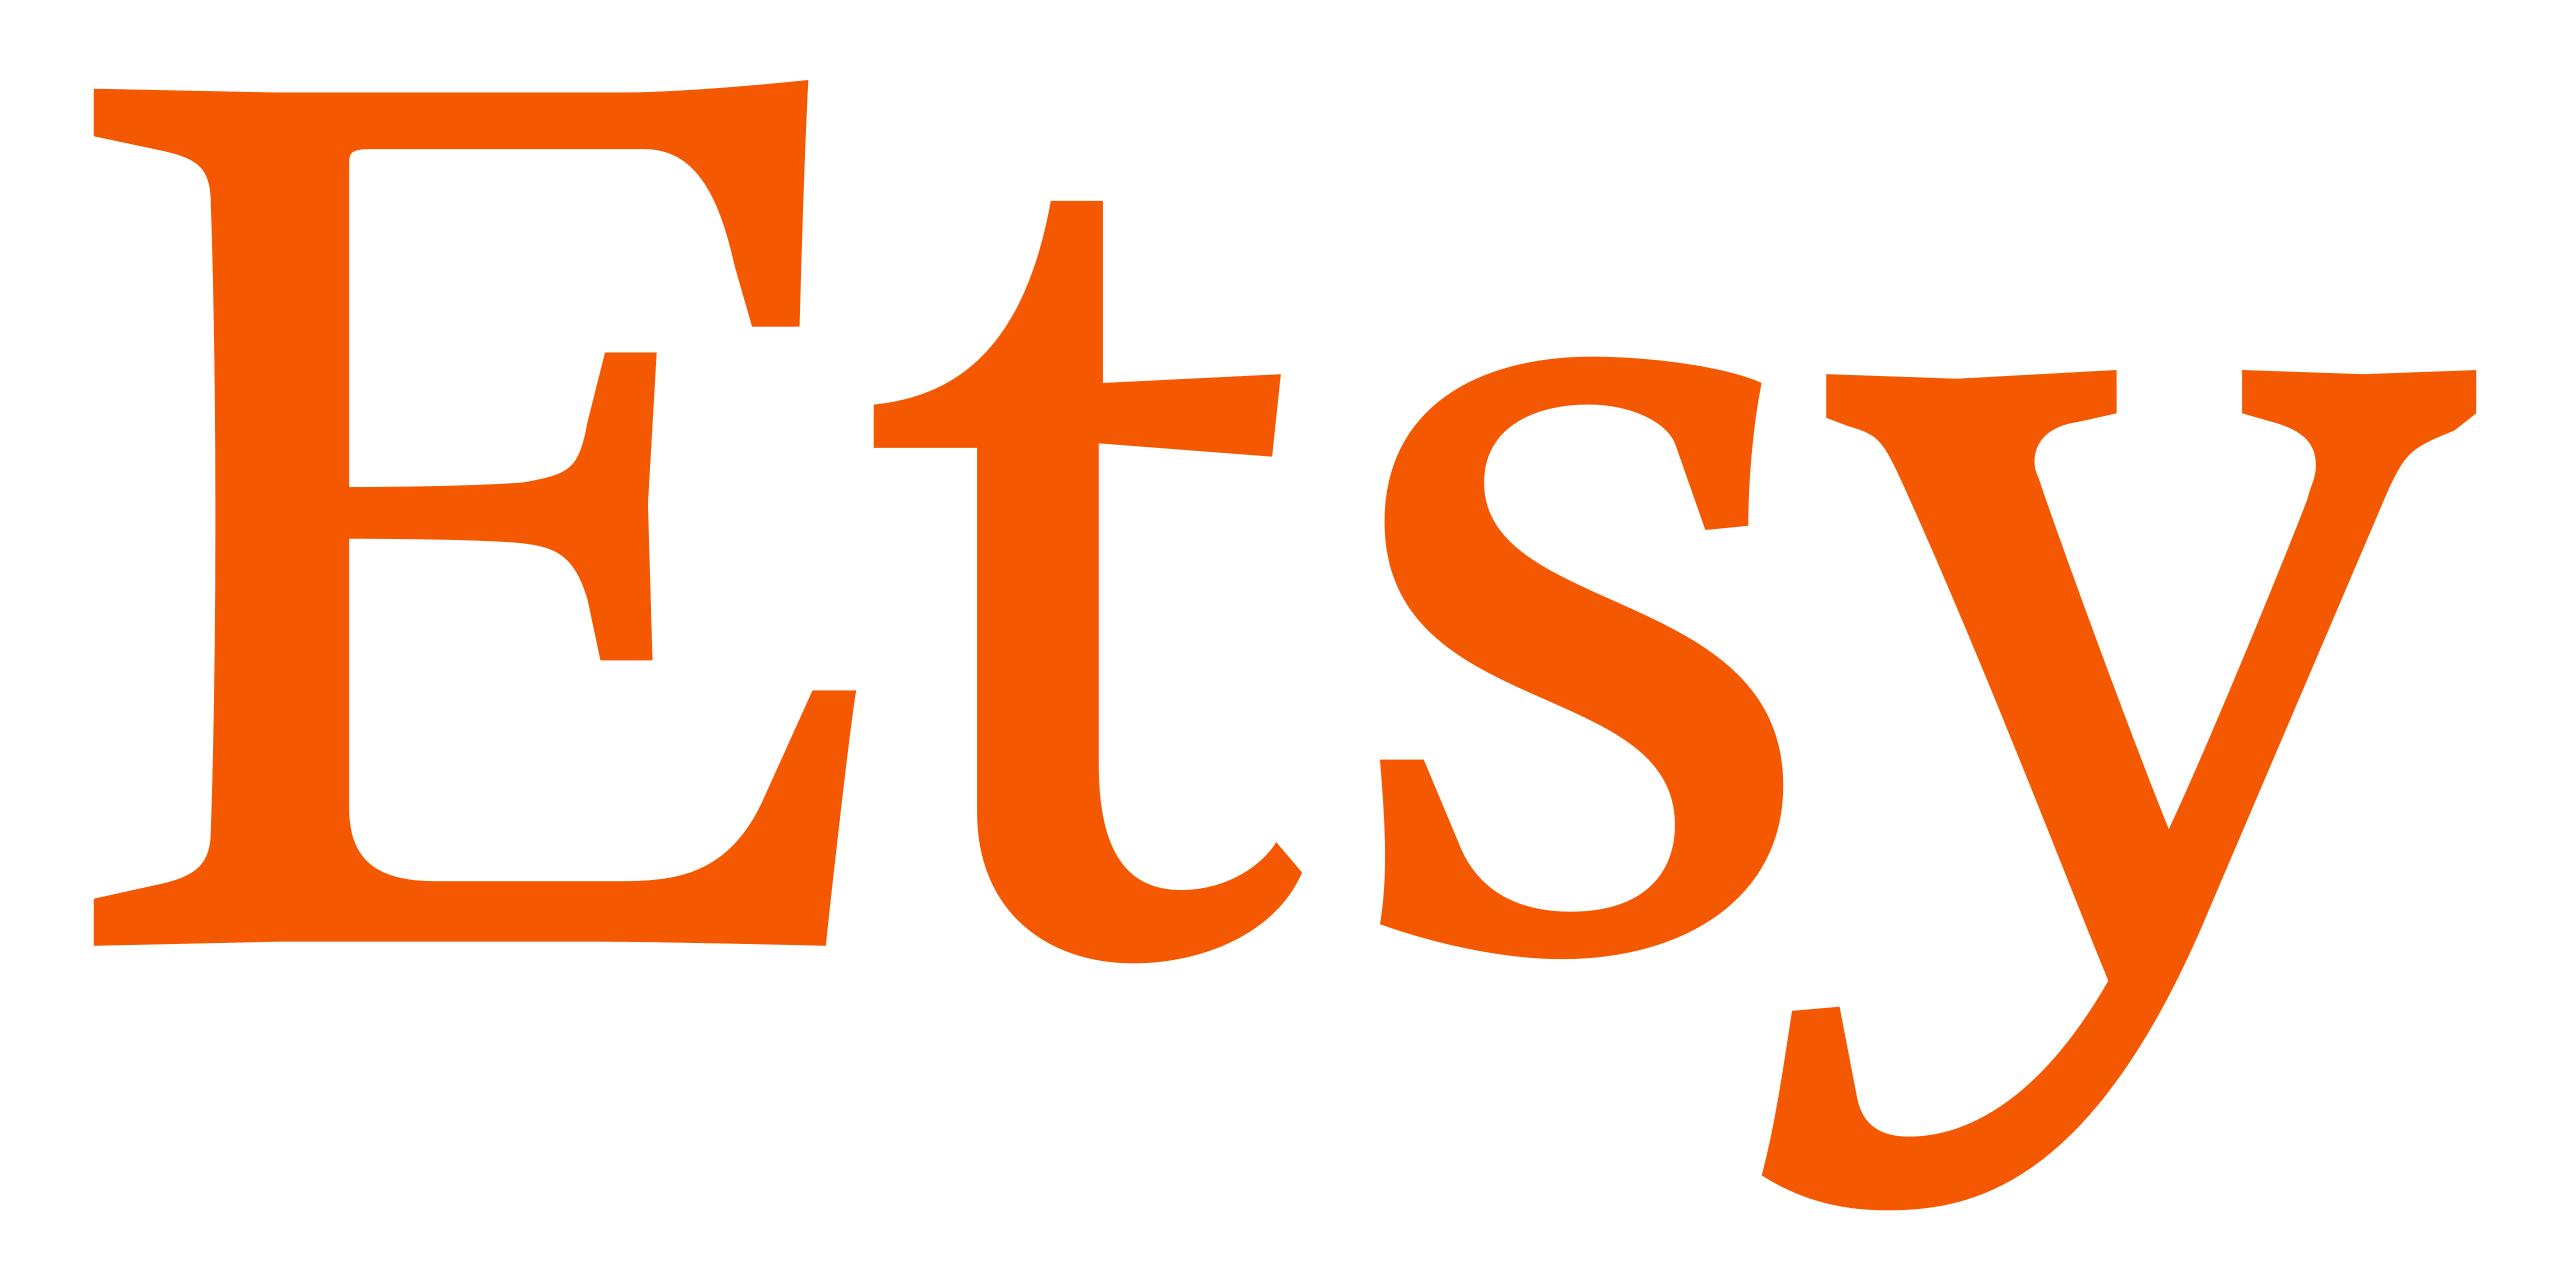 File:Etsy logo.svg - Wikipedia